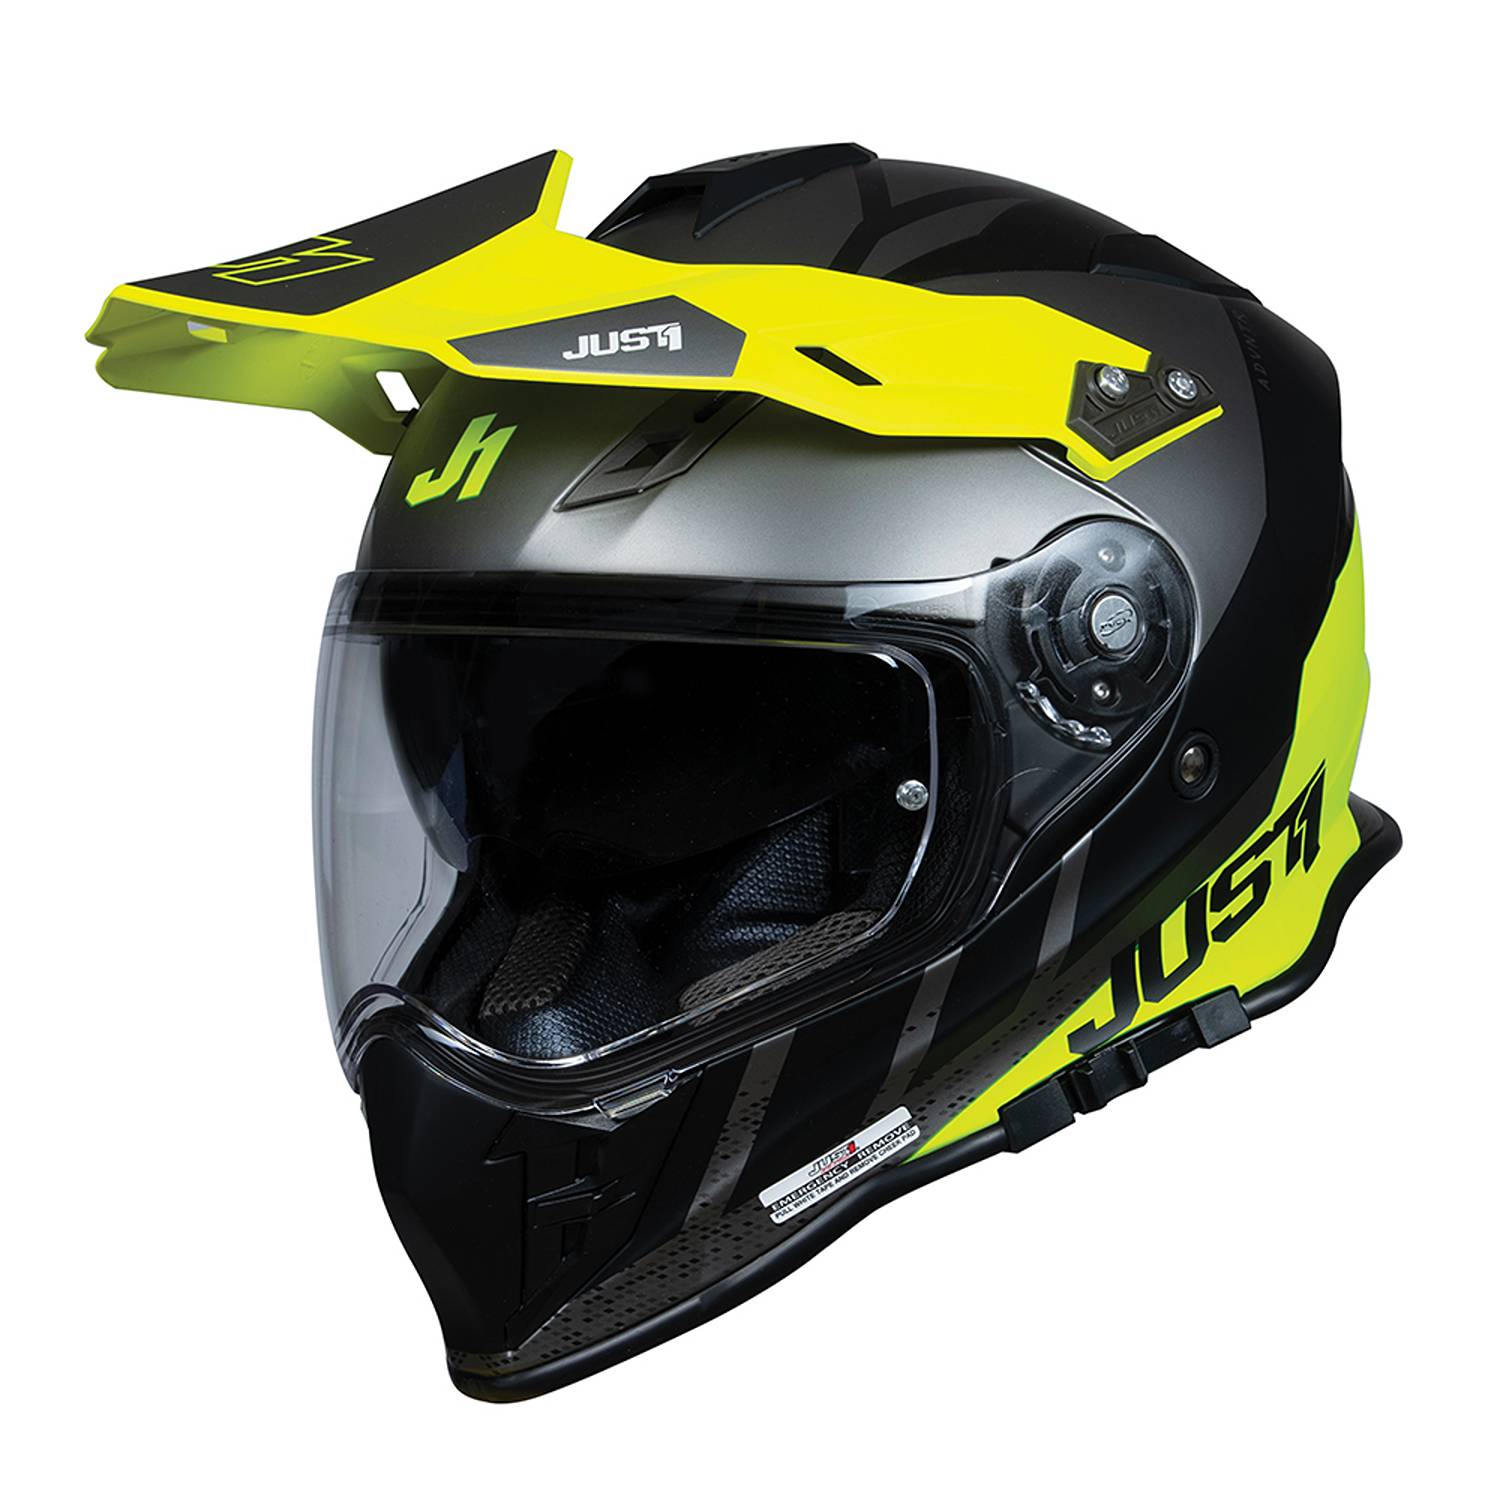 Image of Just1 J34 Pro Outerspace Yellow Fluo Titanium Adventure Helmet Size XL EN